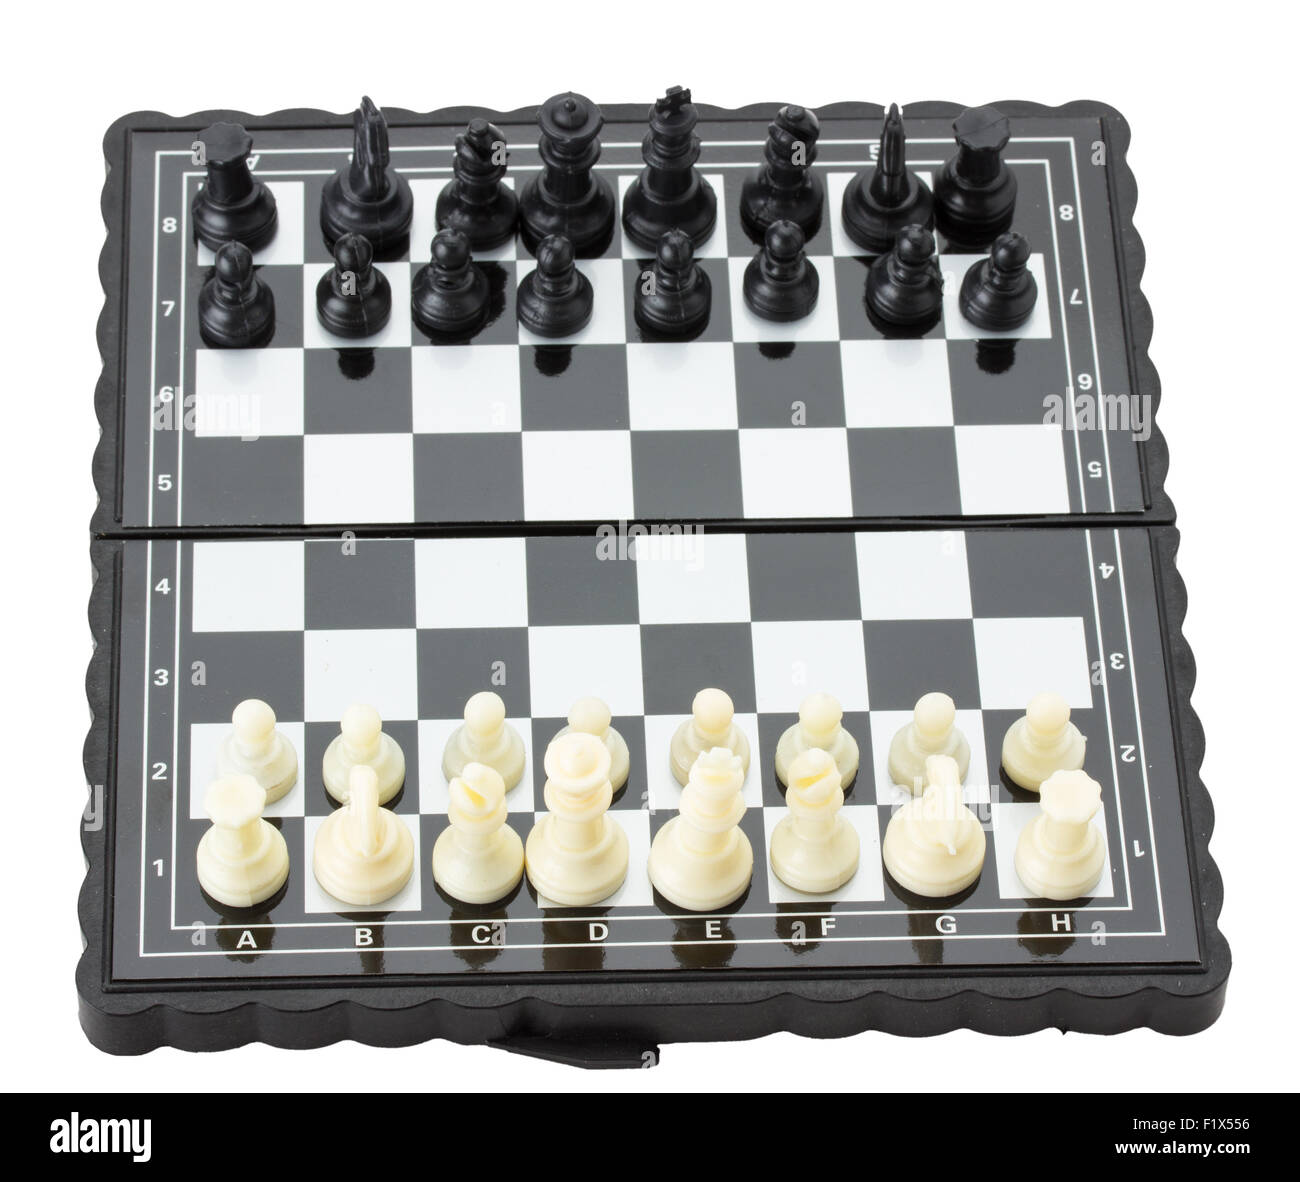 Blanco y negro en el tablero de ajedrez. Foto de stock